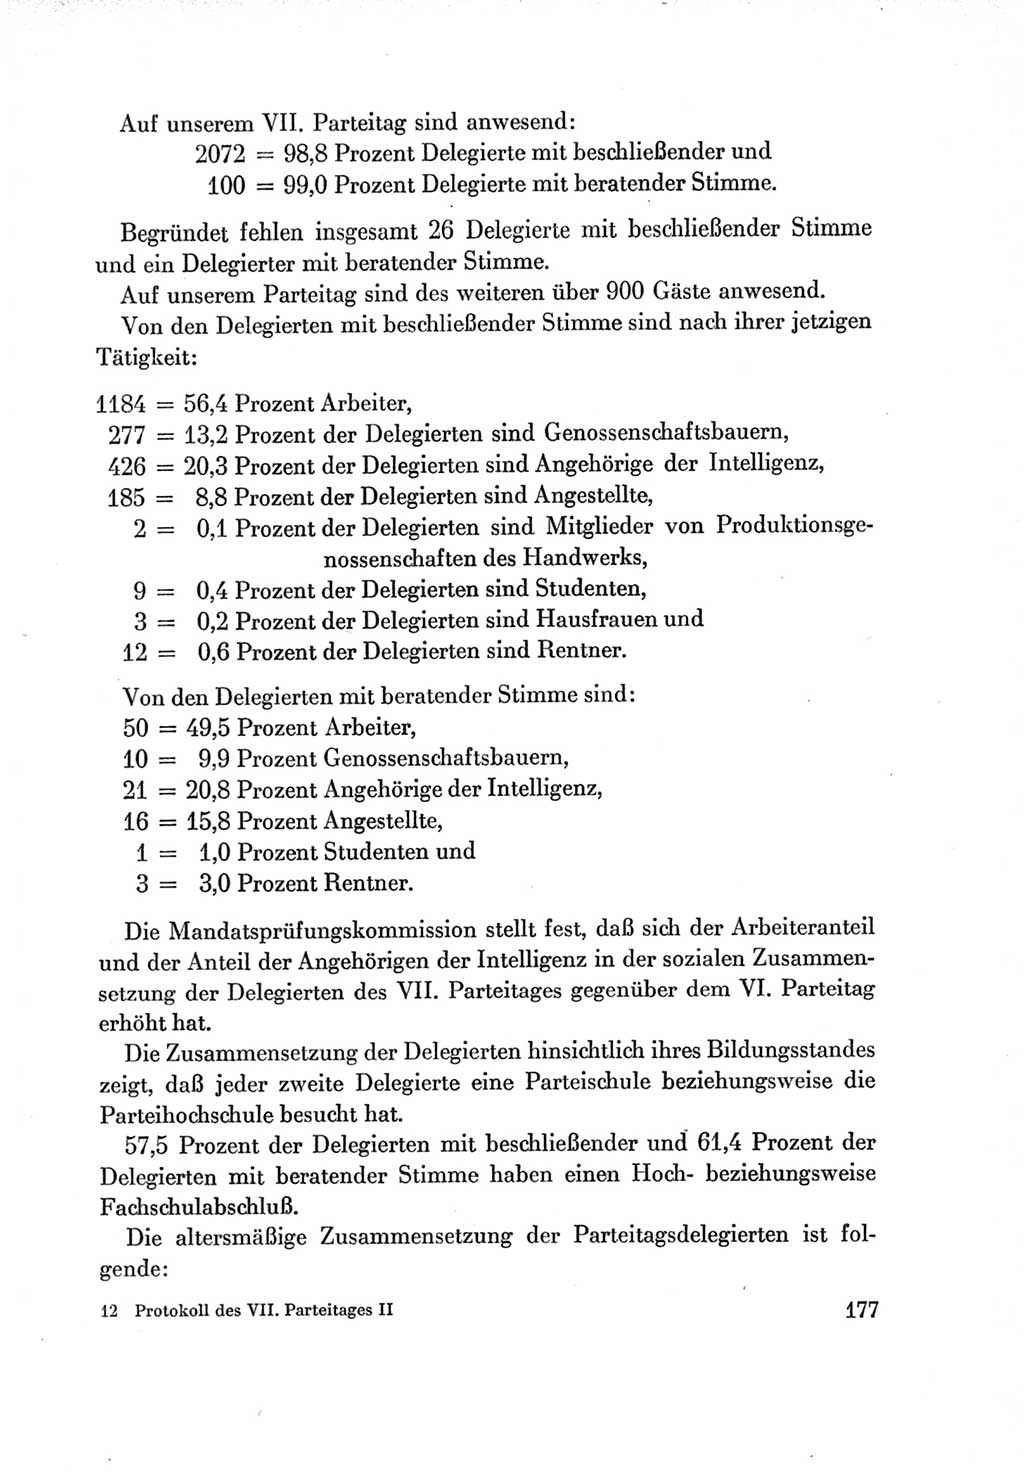 Protokoll der Verhandlungen des Ⅶ. Parteitages der Sozialistischen Einheitspartei Deutschlands (SED) [Deutsche Demokratische Republik (DDR)] 1967, Band Ⅱ, Seite 177 (Prot. Verh. Ⅶ. PT SED DDR 1967, Bd. Ⅱ, S. 177)